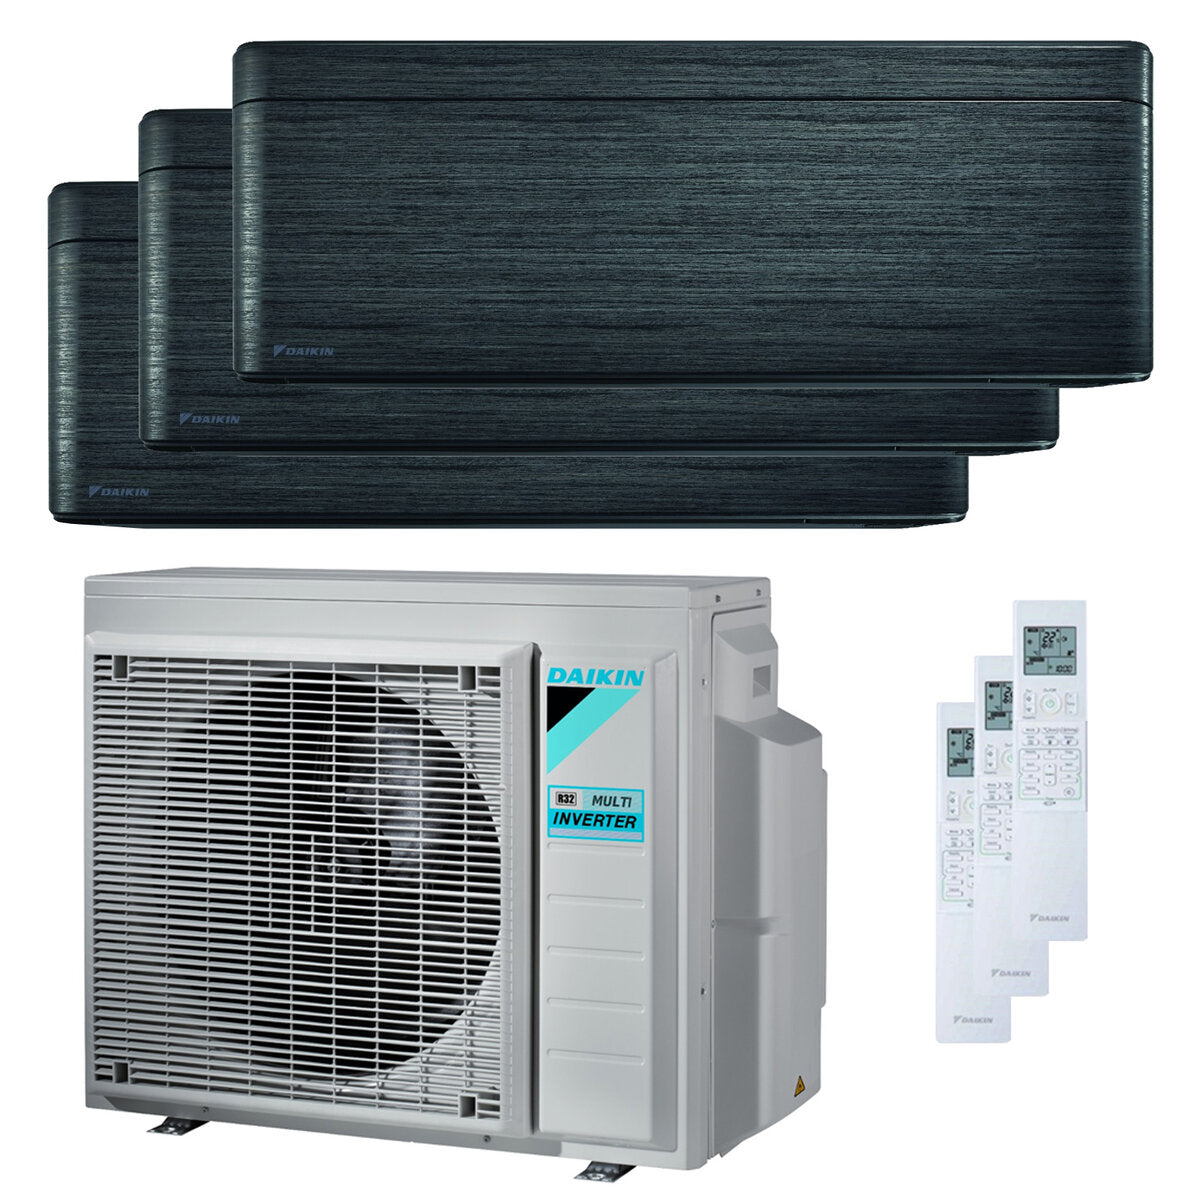 Daikin Stylish trial split air conditioner 7000 + 9000 + 9000 BTU inverter A +++ wifi outdoor unit 5.2 kW